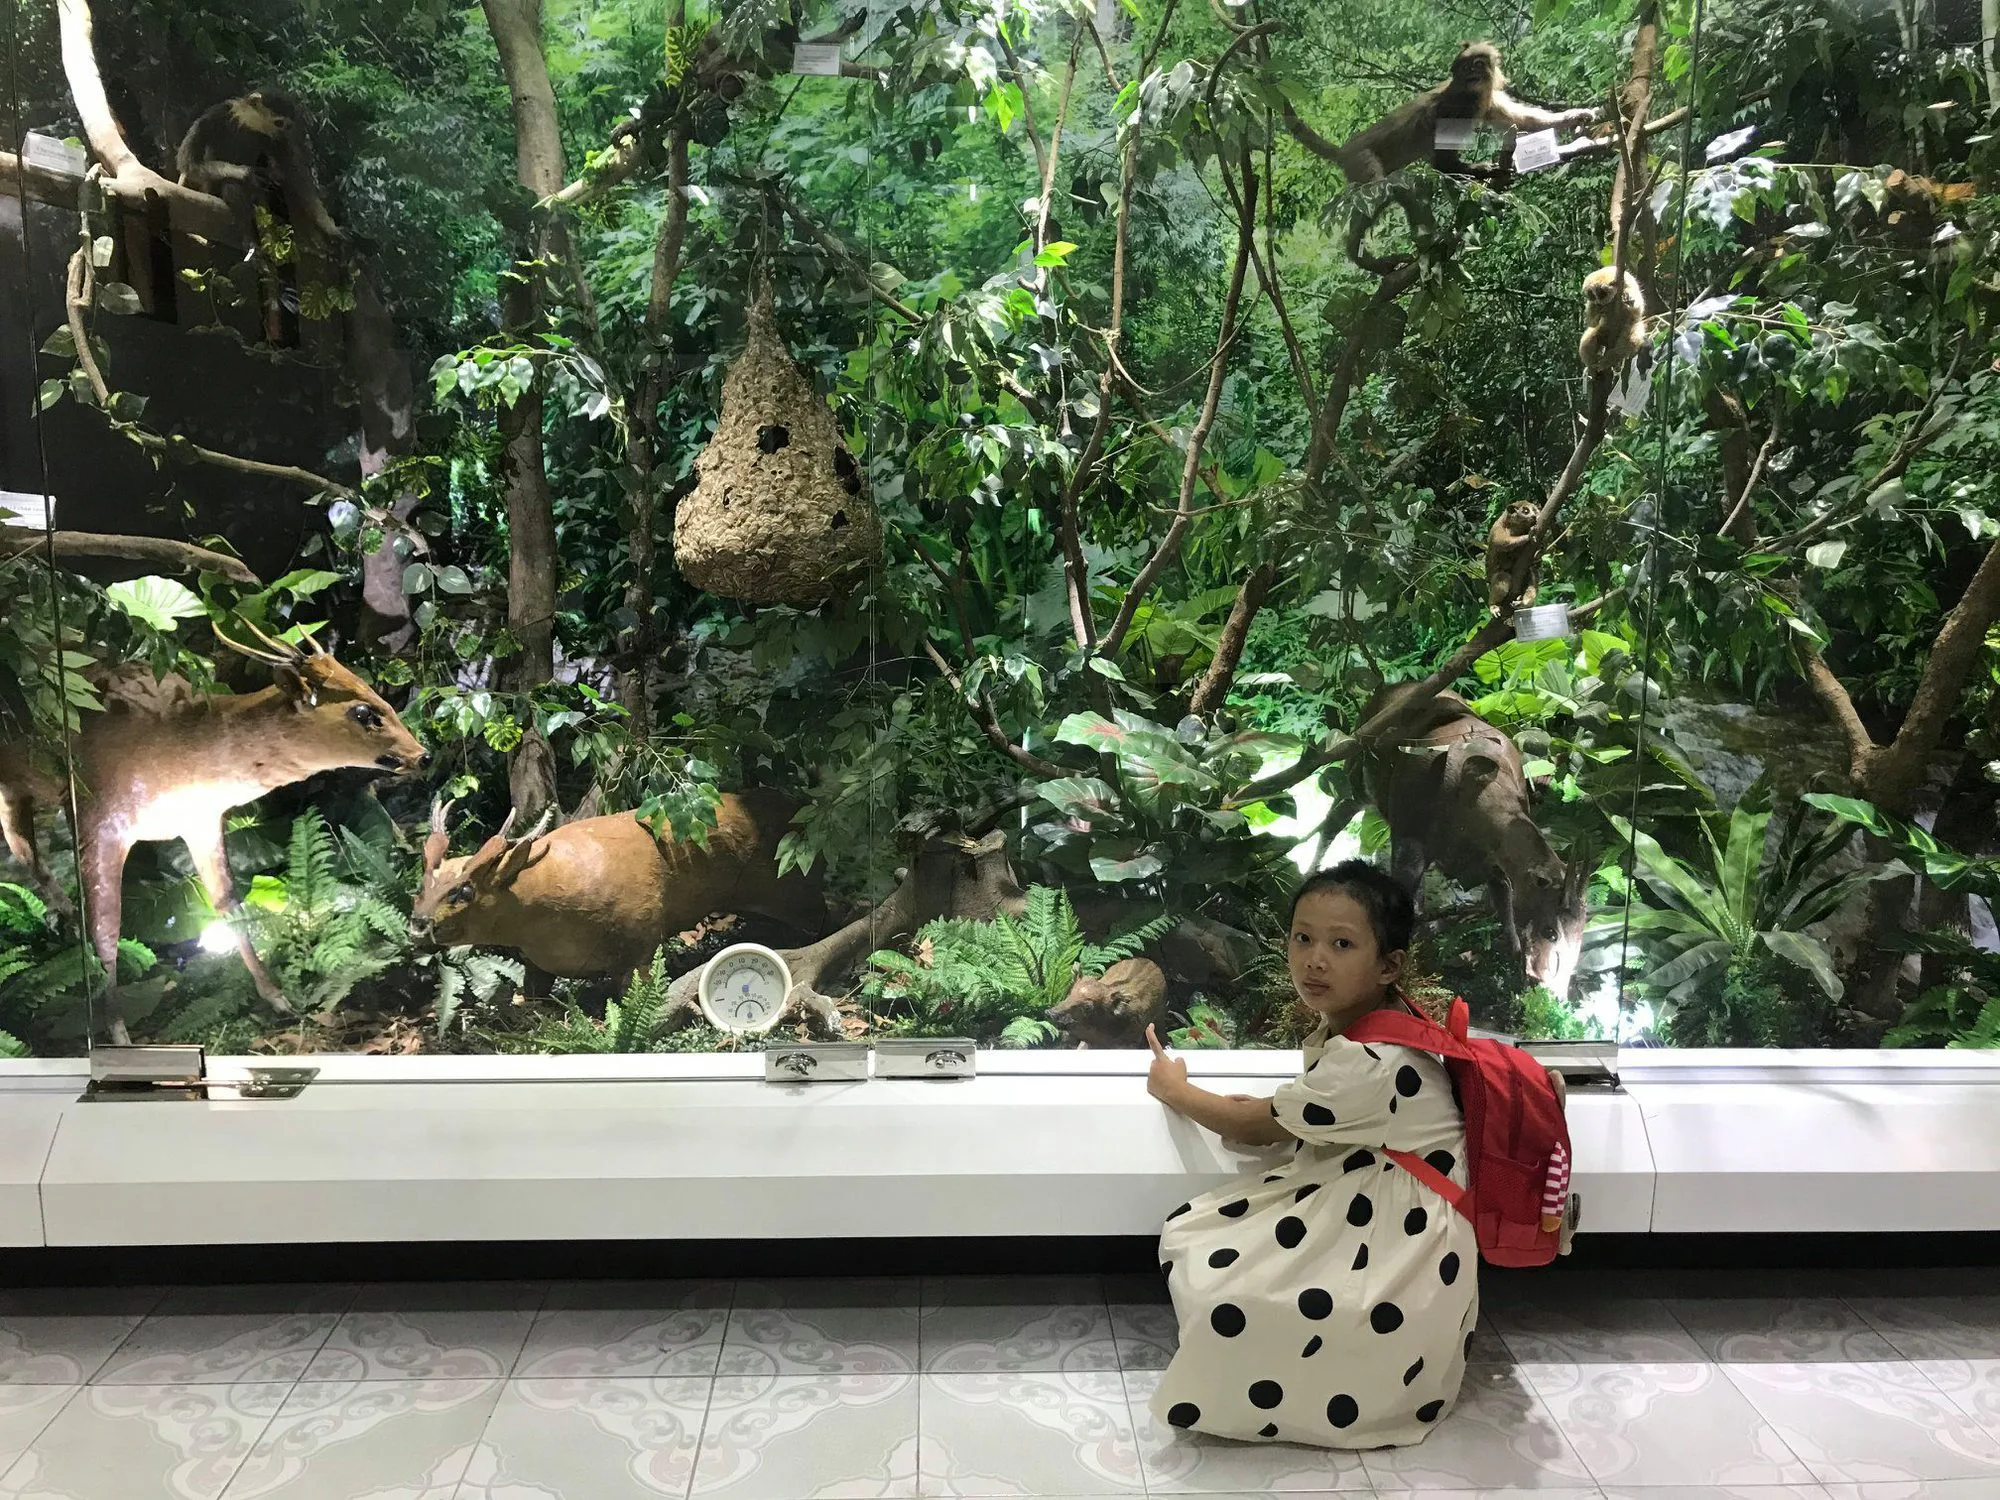 Khám phá Bảo tàng rừng Việt Nam cùng trải nghiệm vườn thực vật quý hiếm của thiên nhiên tuyệt diệu - Ảnh 2.